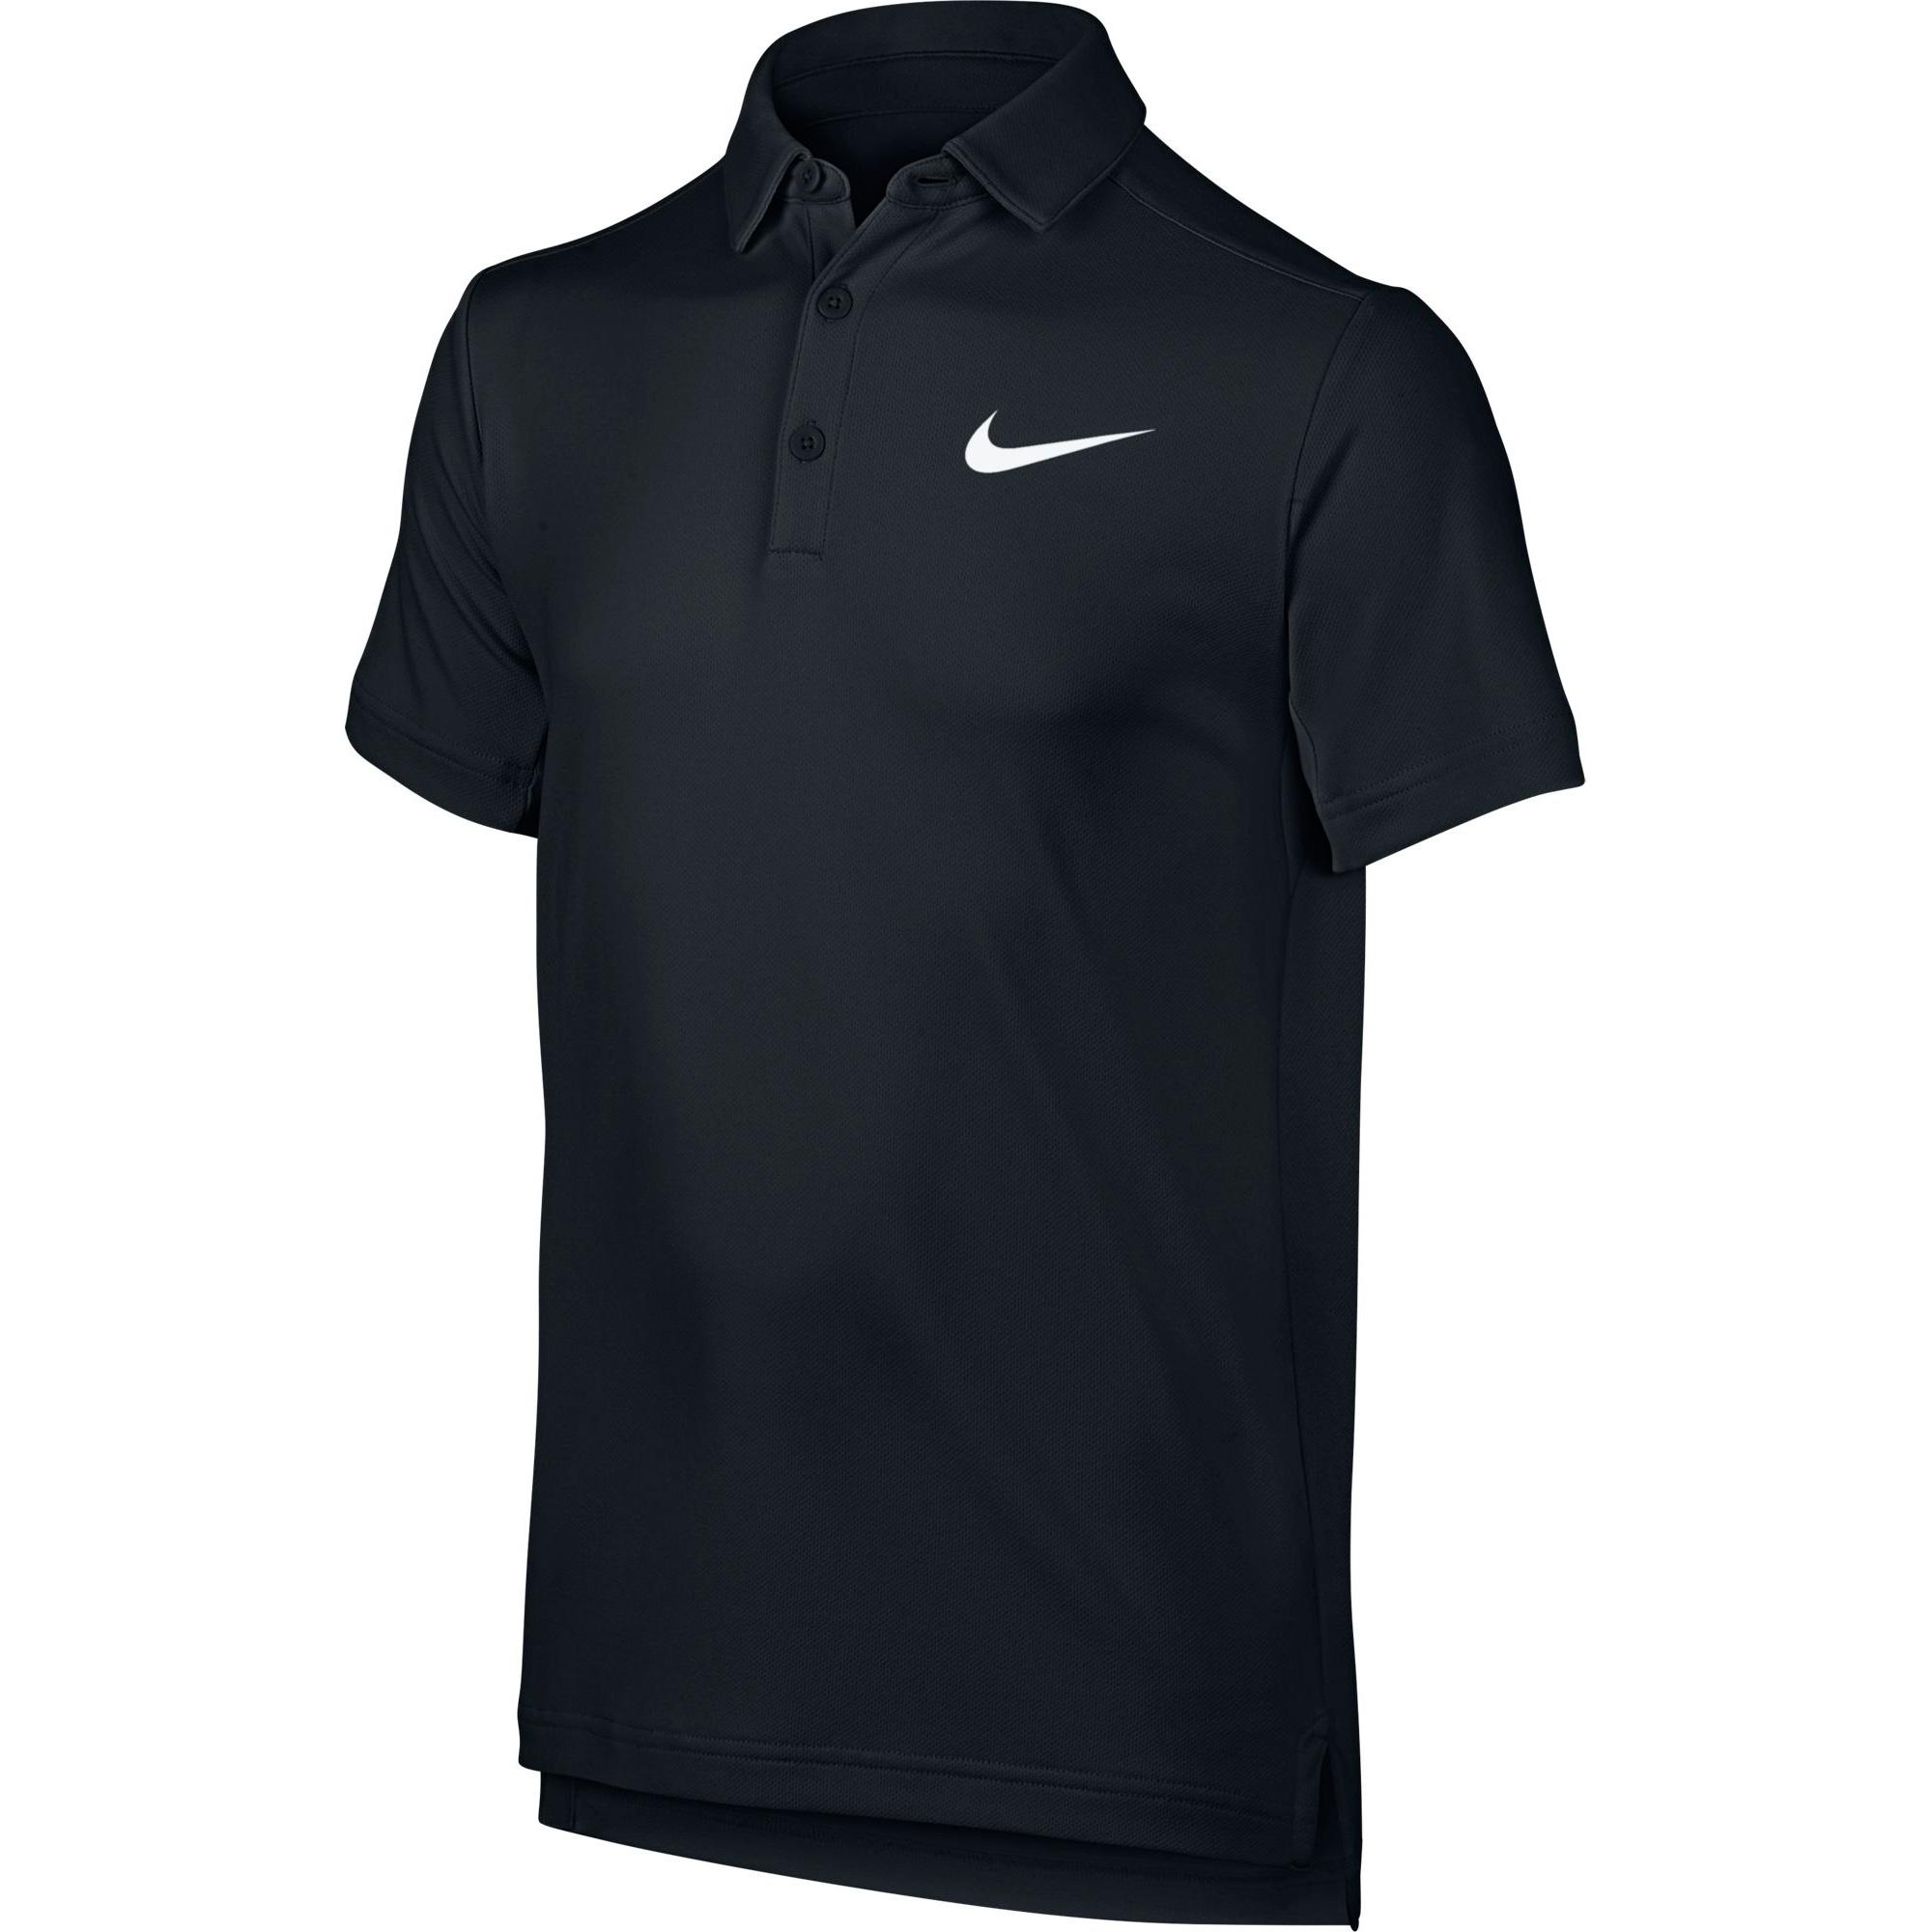 Nike Boys Dry Tennis Polo - Black - Tennisnuts.com